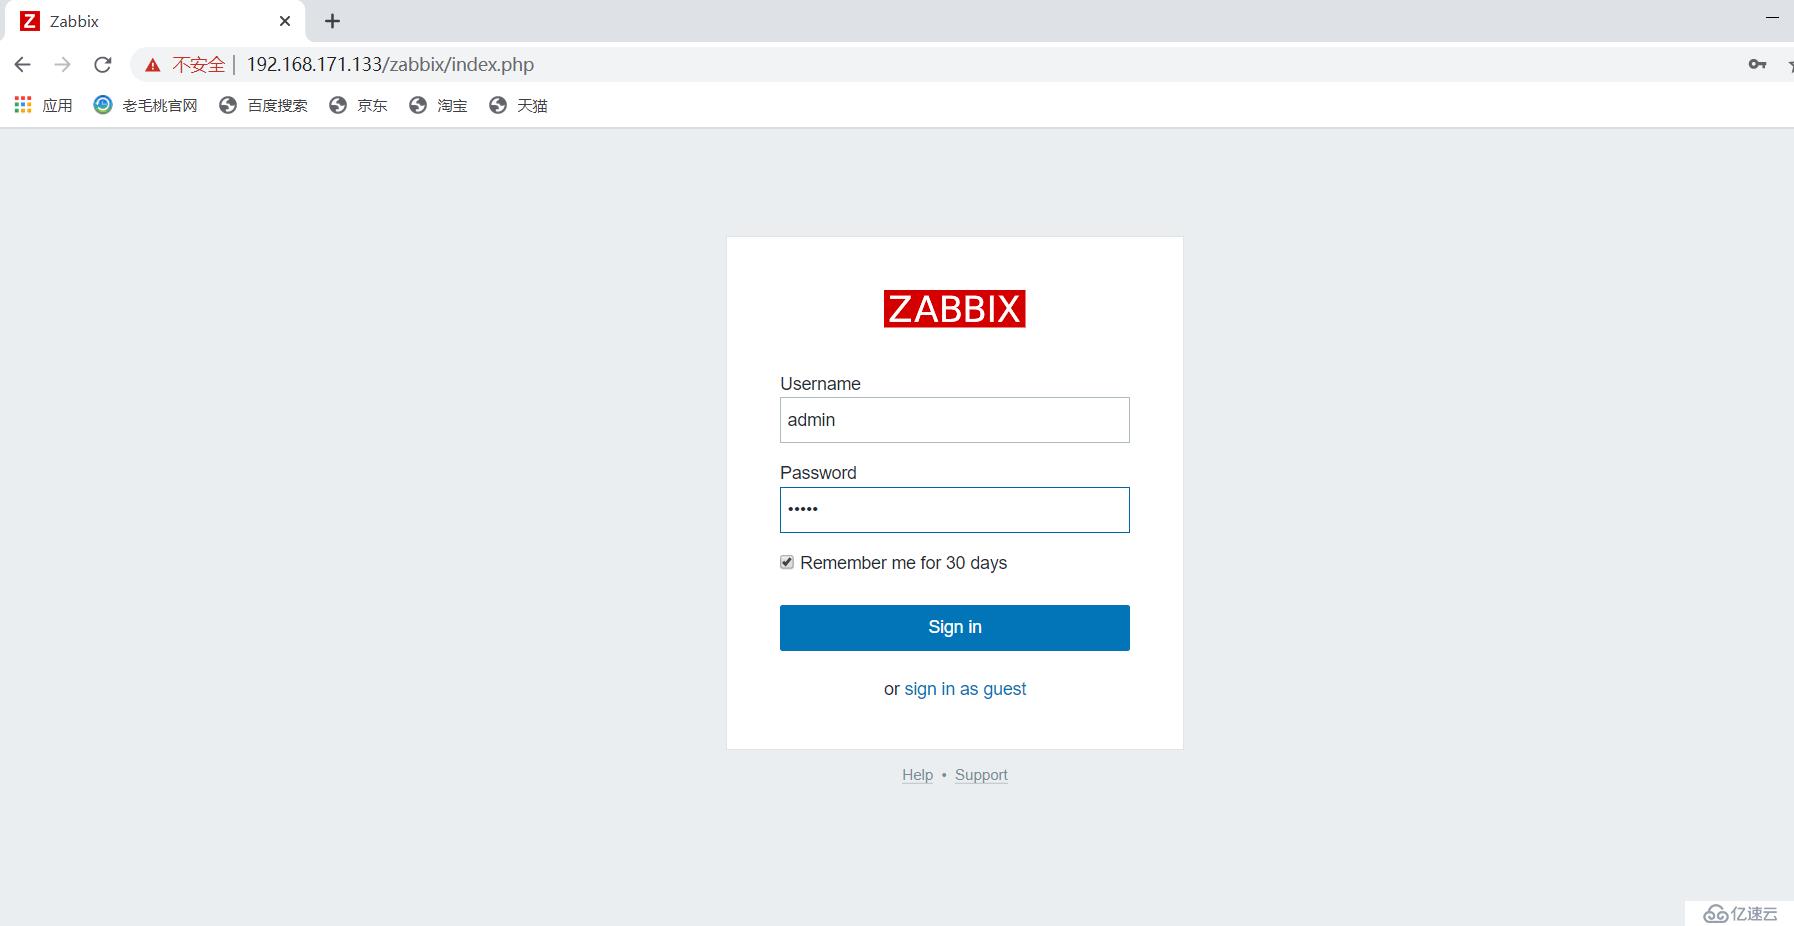 如何部署zabbix监控服务器？